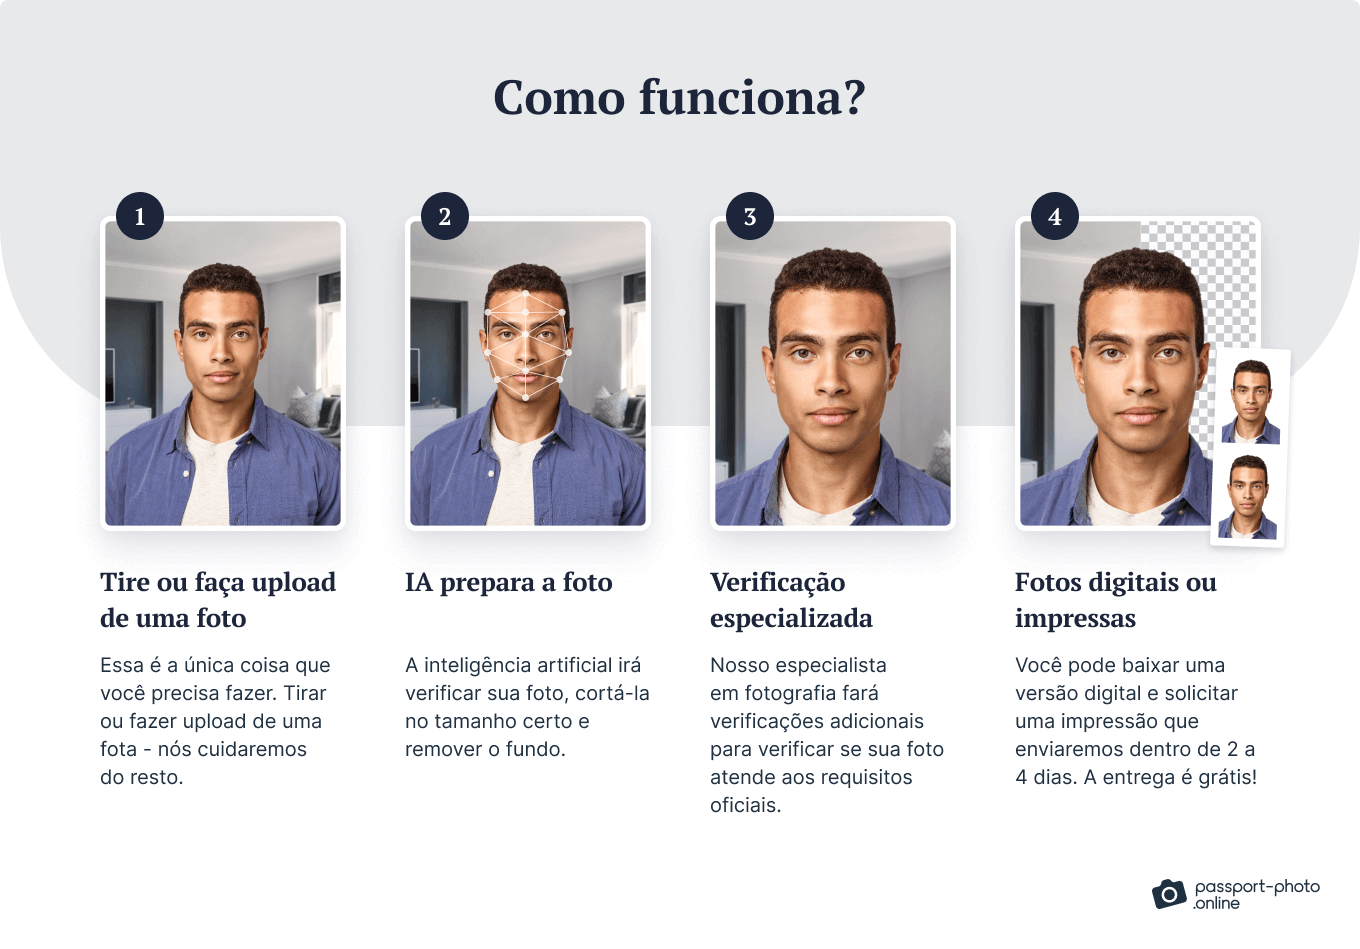 Como funciona a foto do passaporte online em 4 etapas